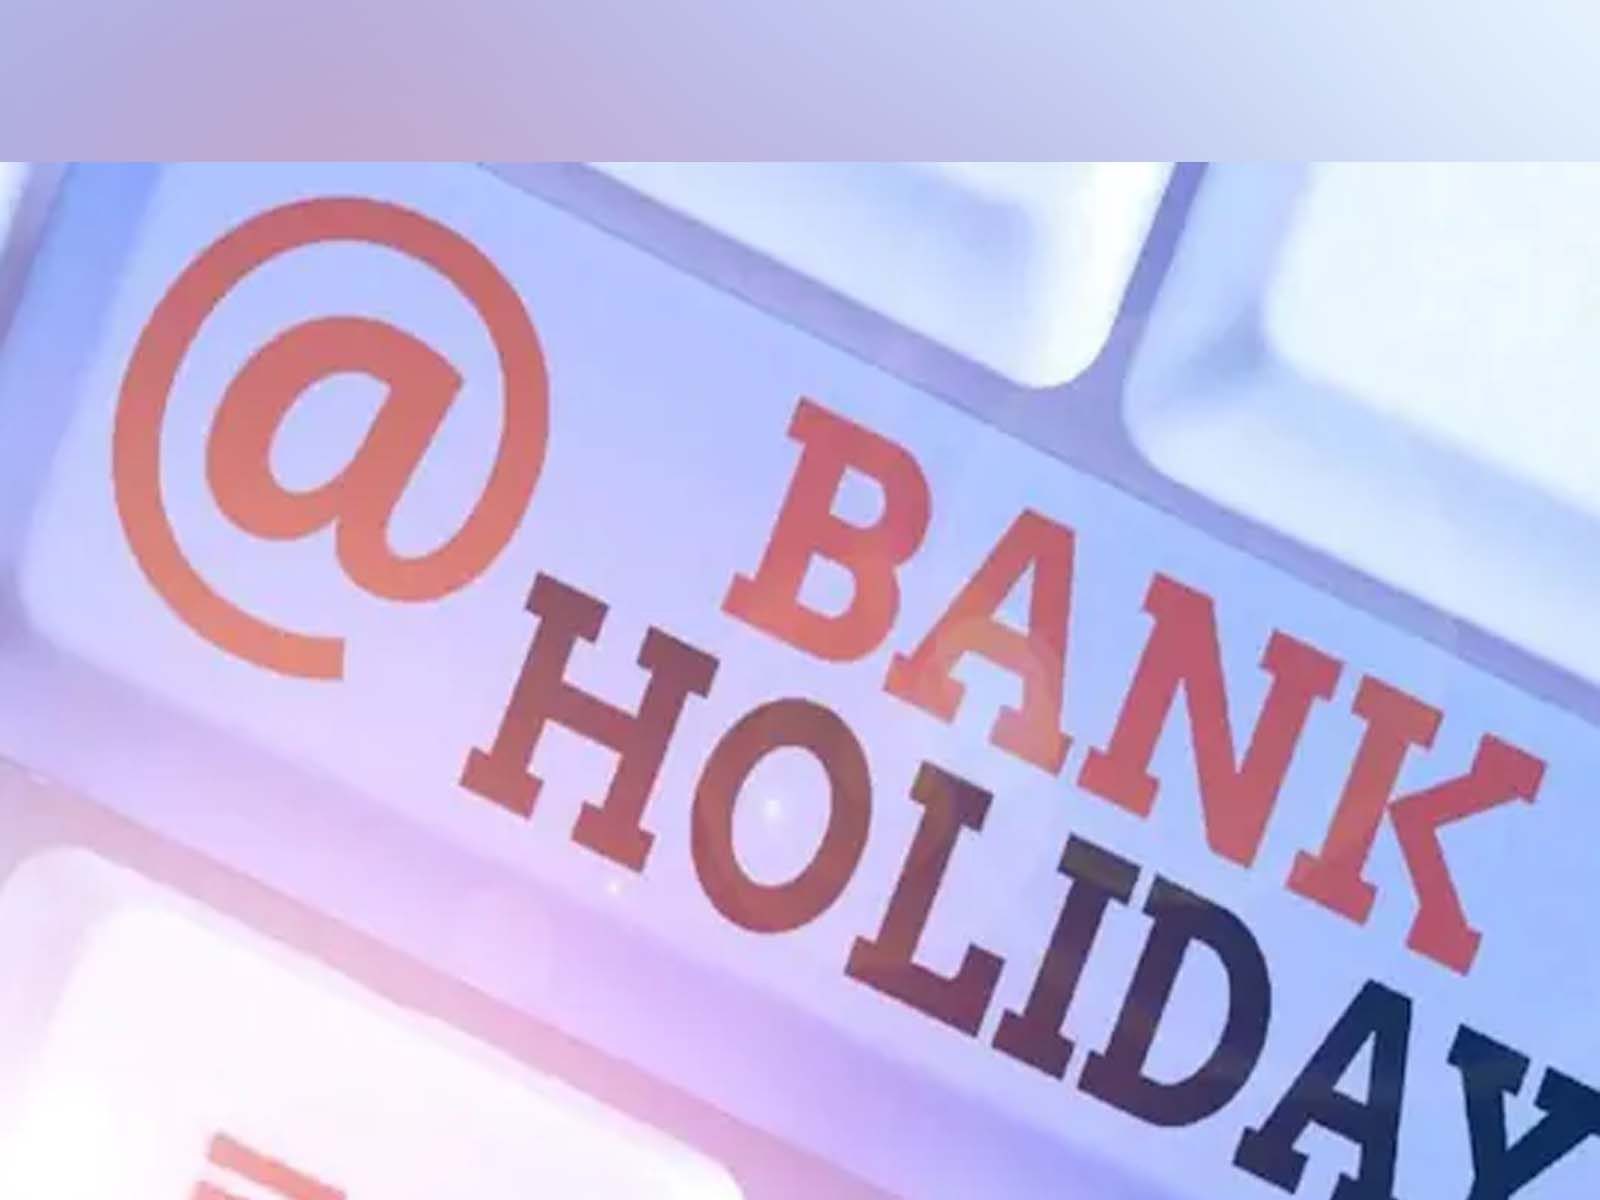 Bank Holidays 